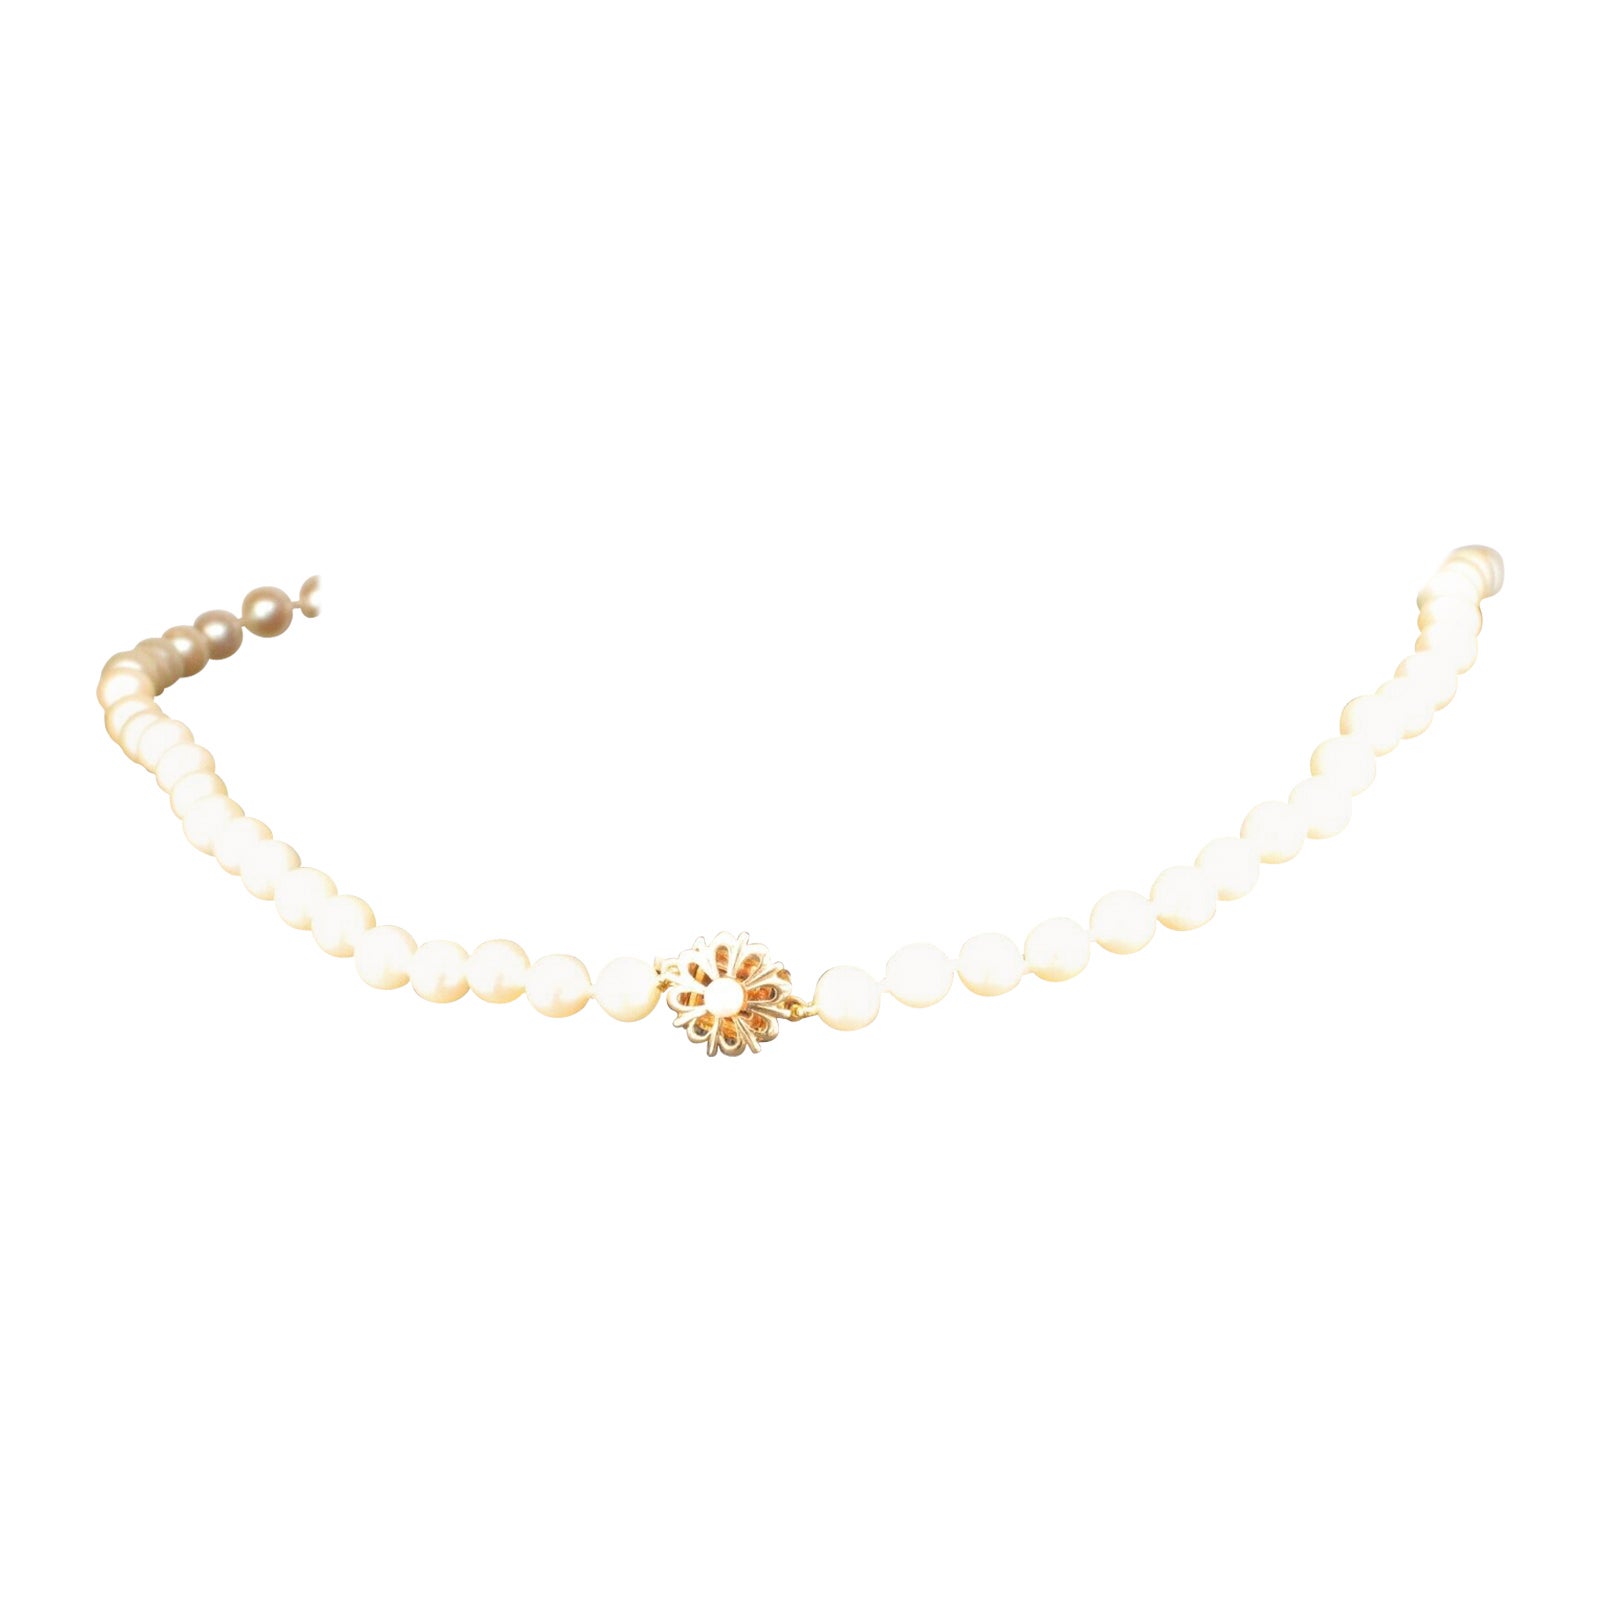 Halskette aus Zuchtperlen mit sehr hübschem 9 Karat Gelbgold und Perlenverschluss